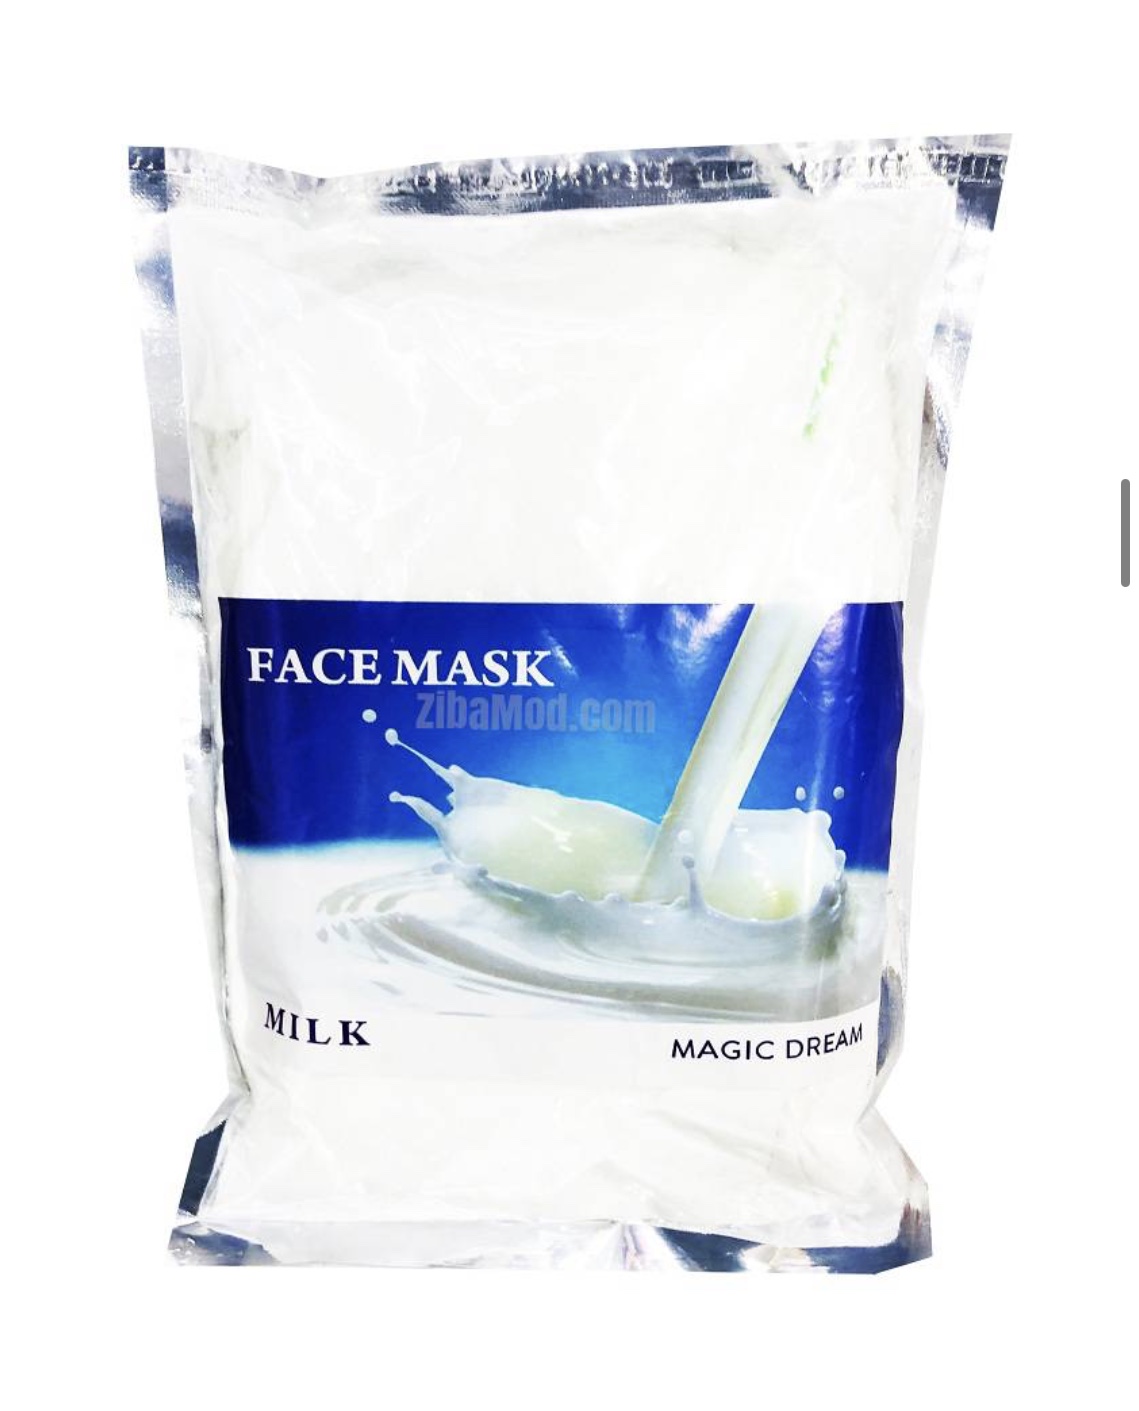 ماسک پودری مجیک دریم مدل شیر حجم 1 کیلو گرم